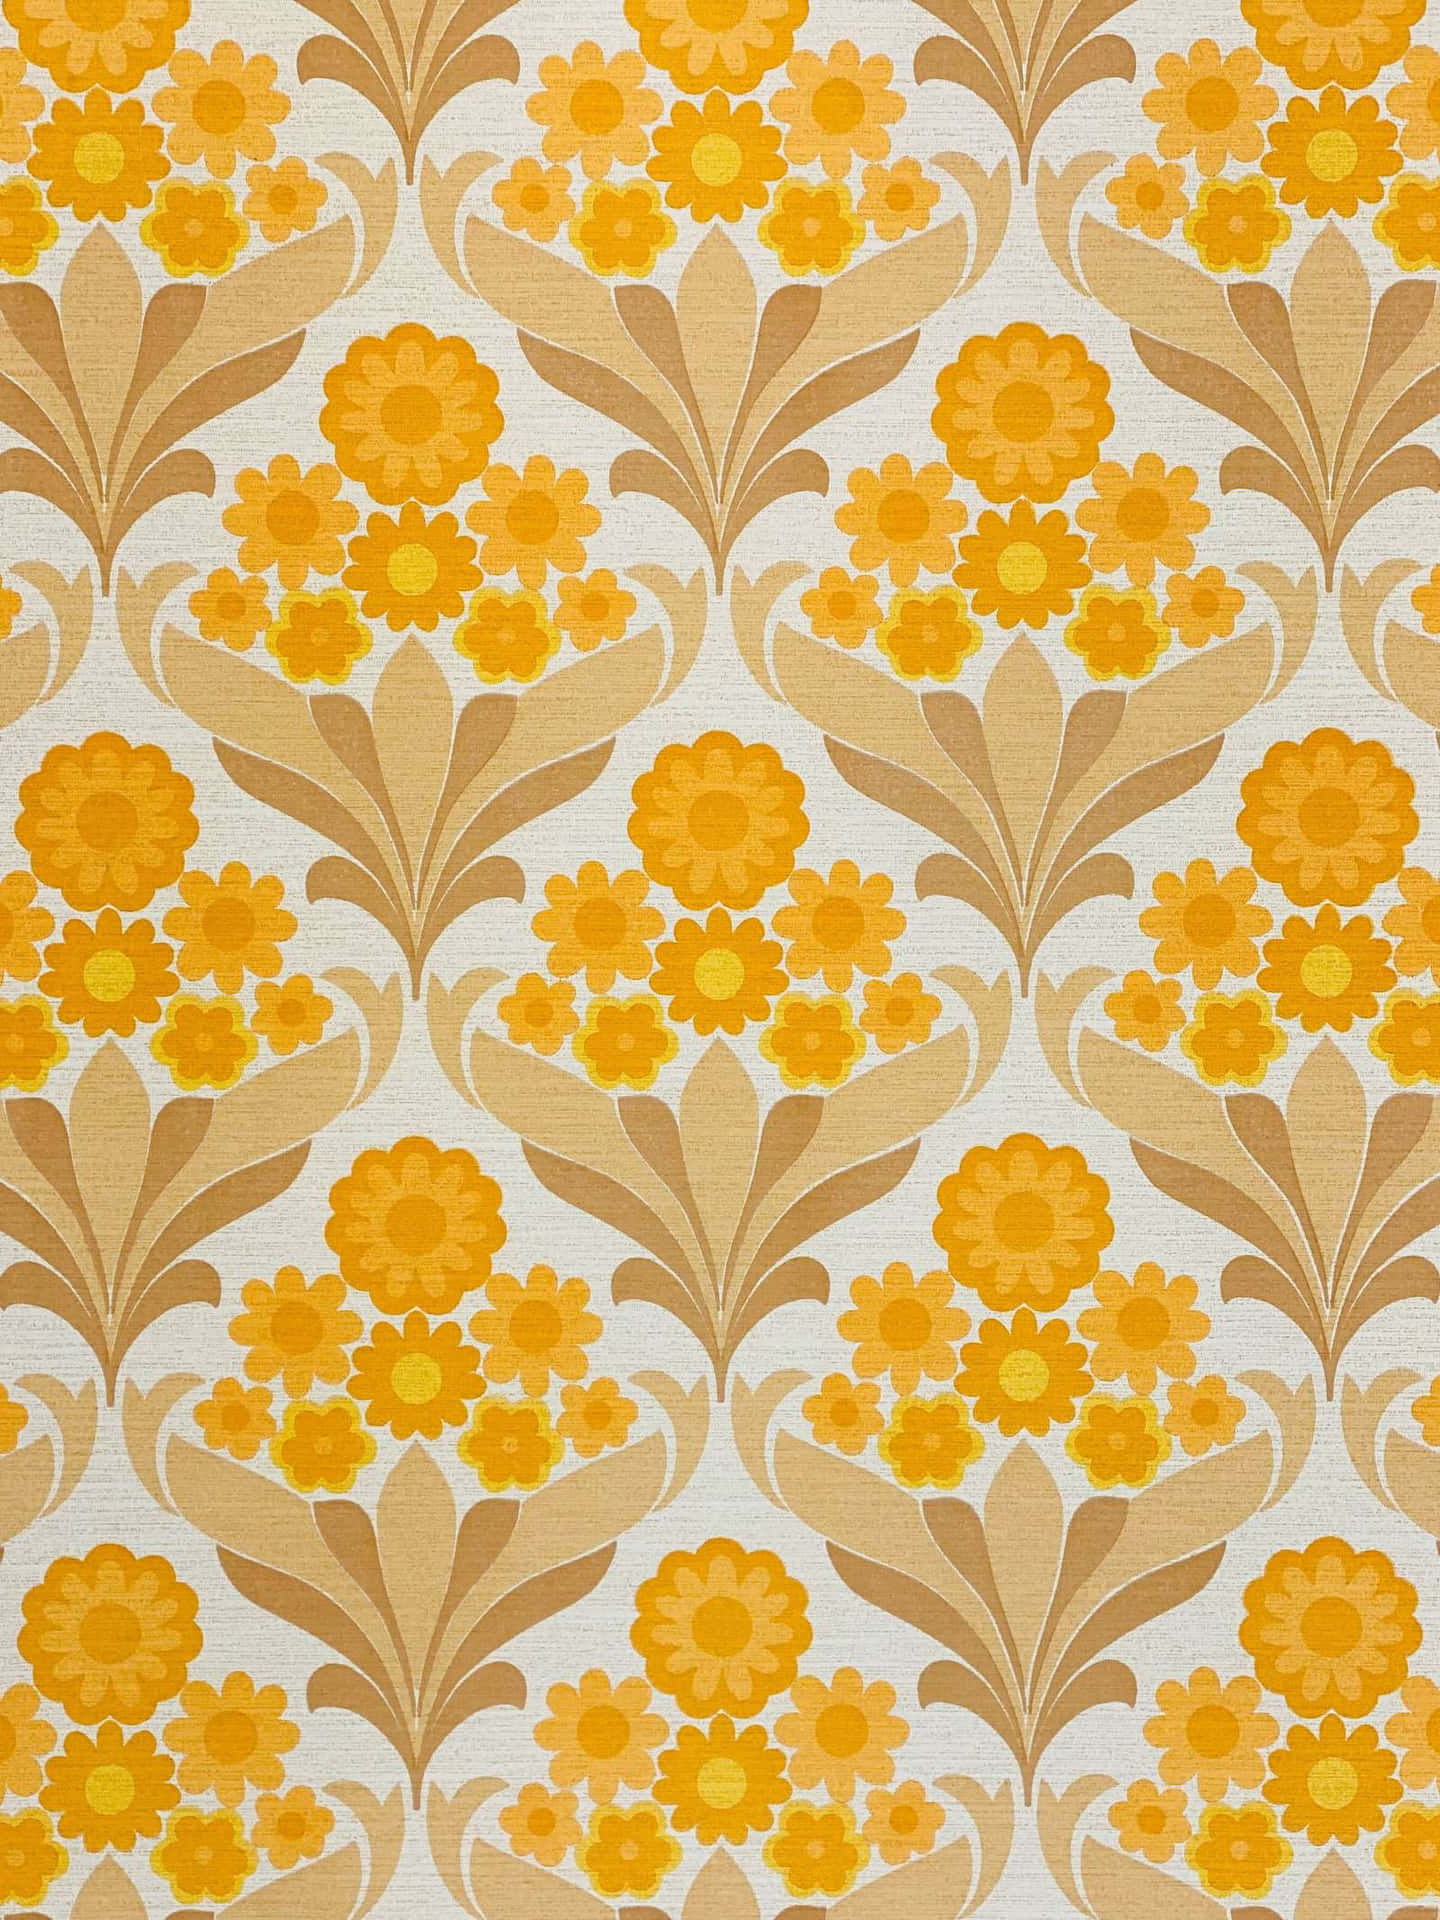 Corazonesabundan En Este Encantador Diseño Floral De Los 70s. Fondo de pantalla